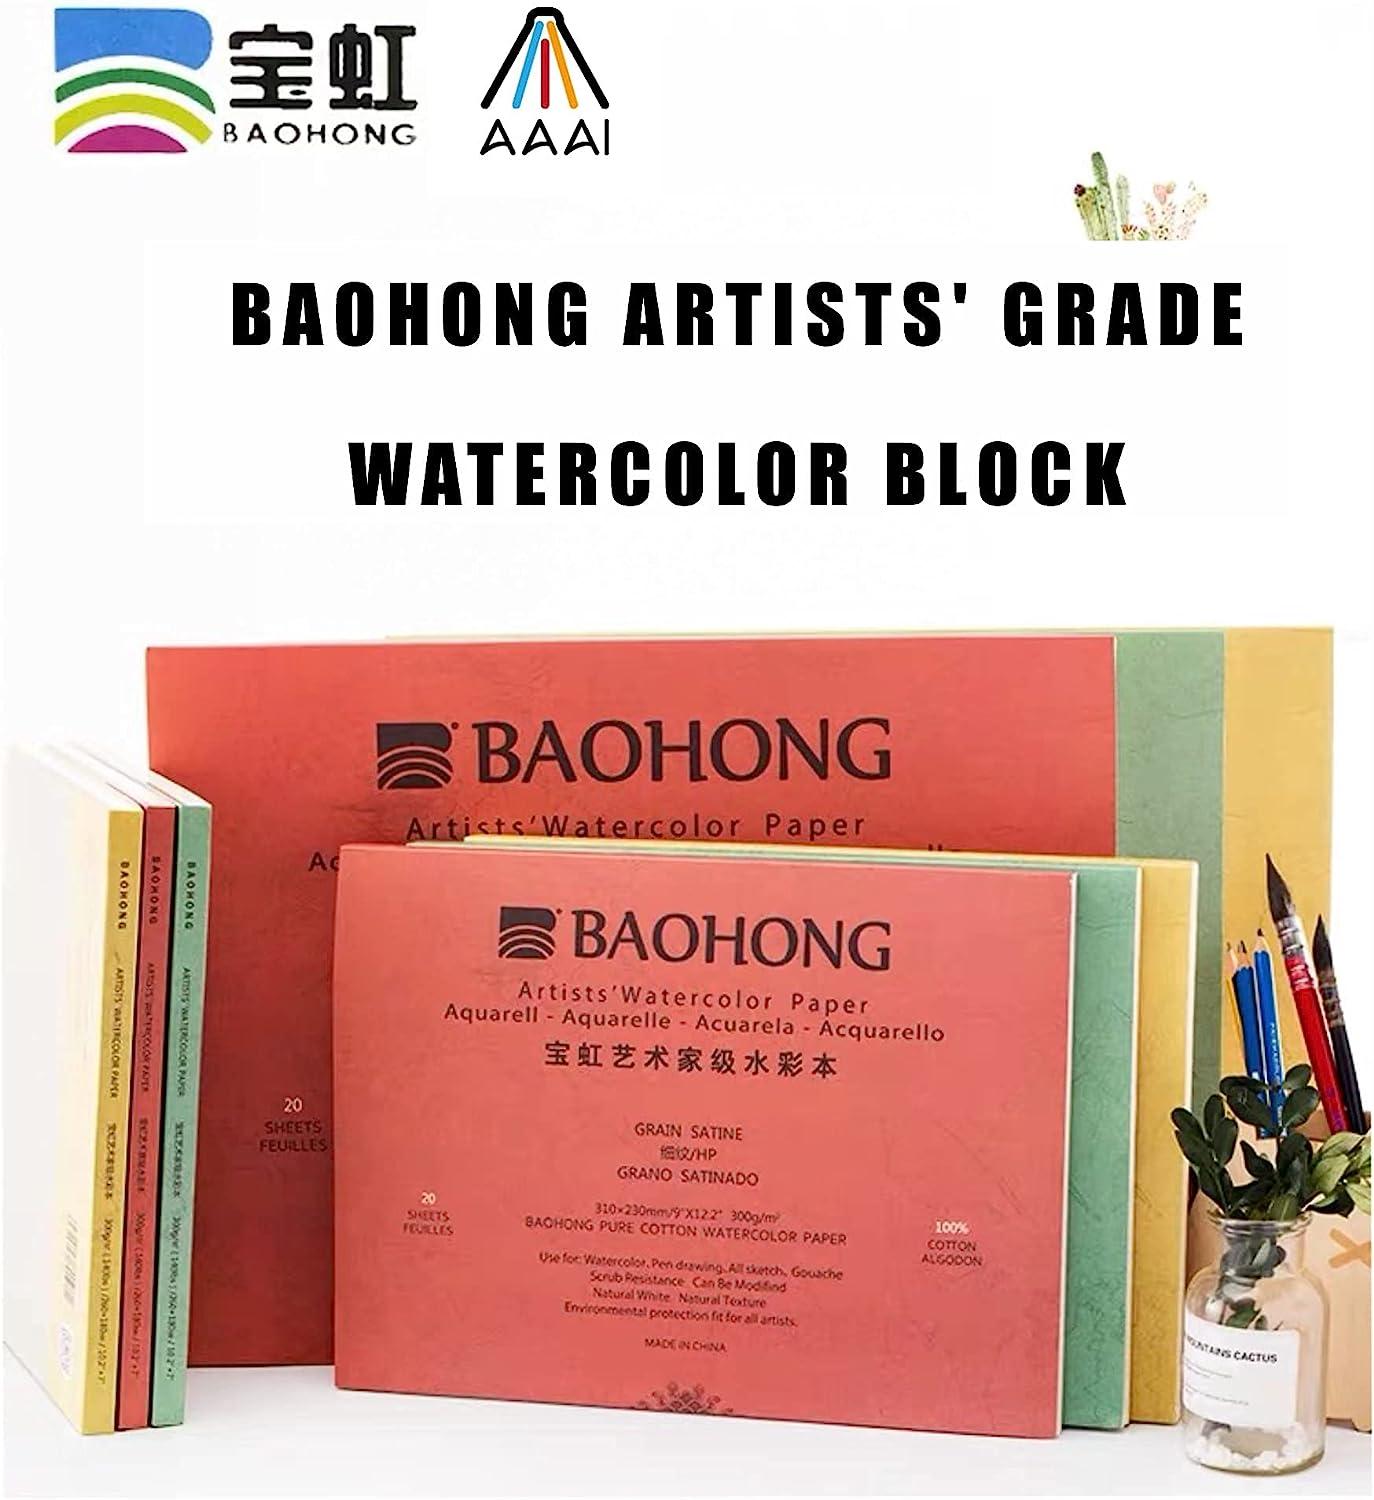 BAOHONG Watercolor Paper